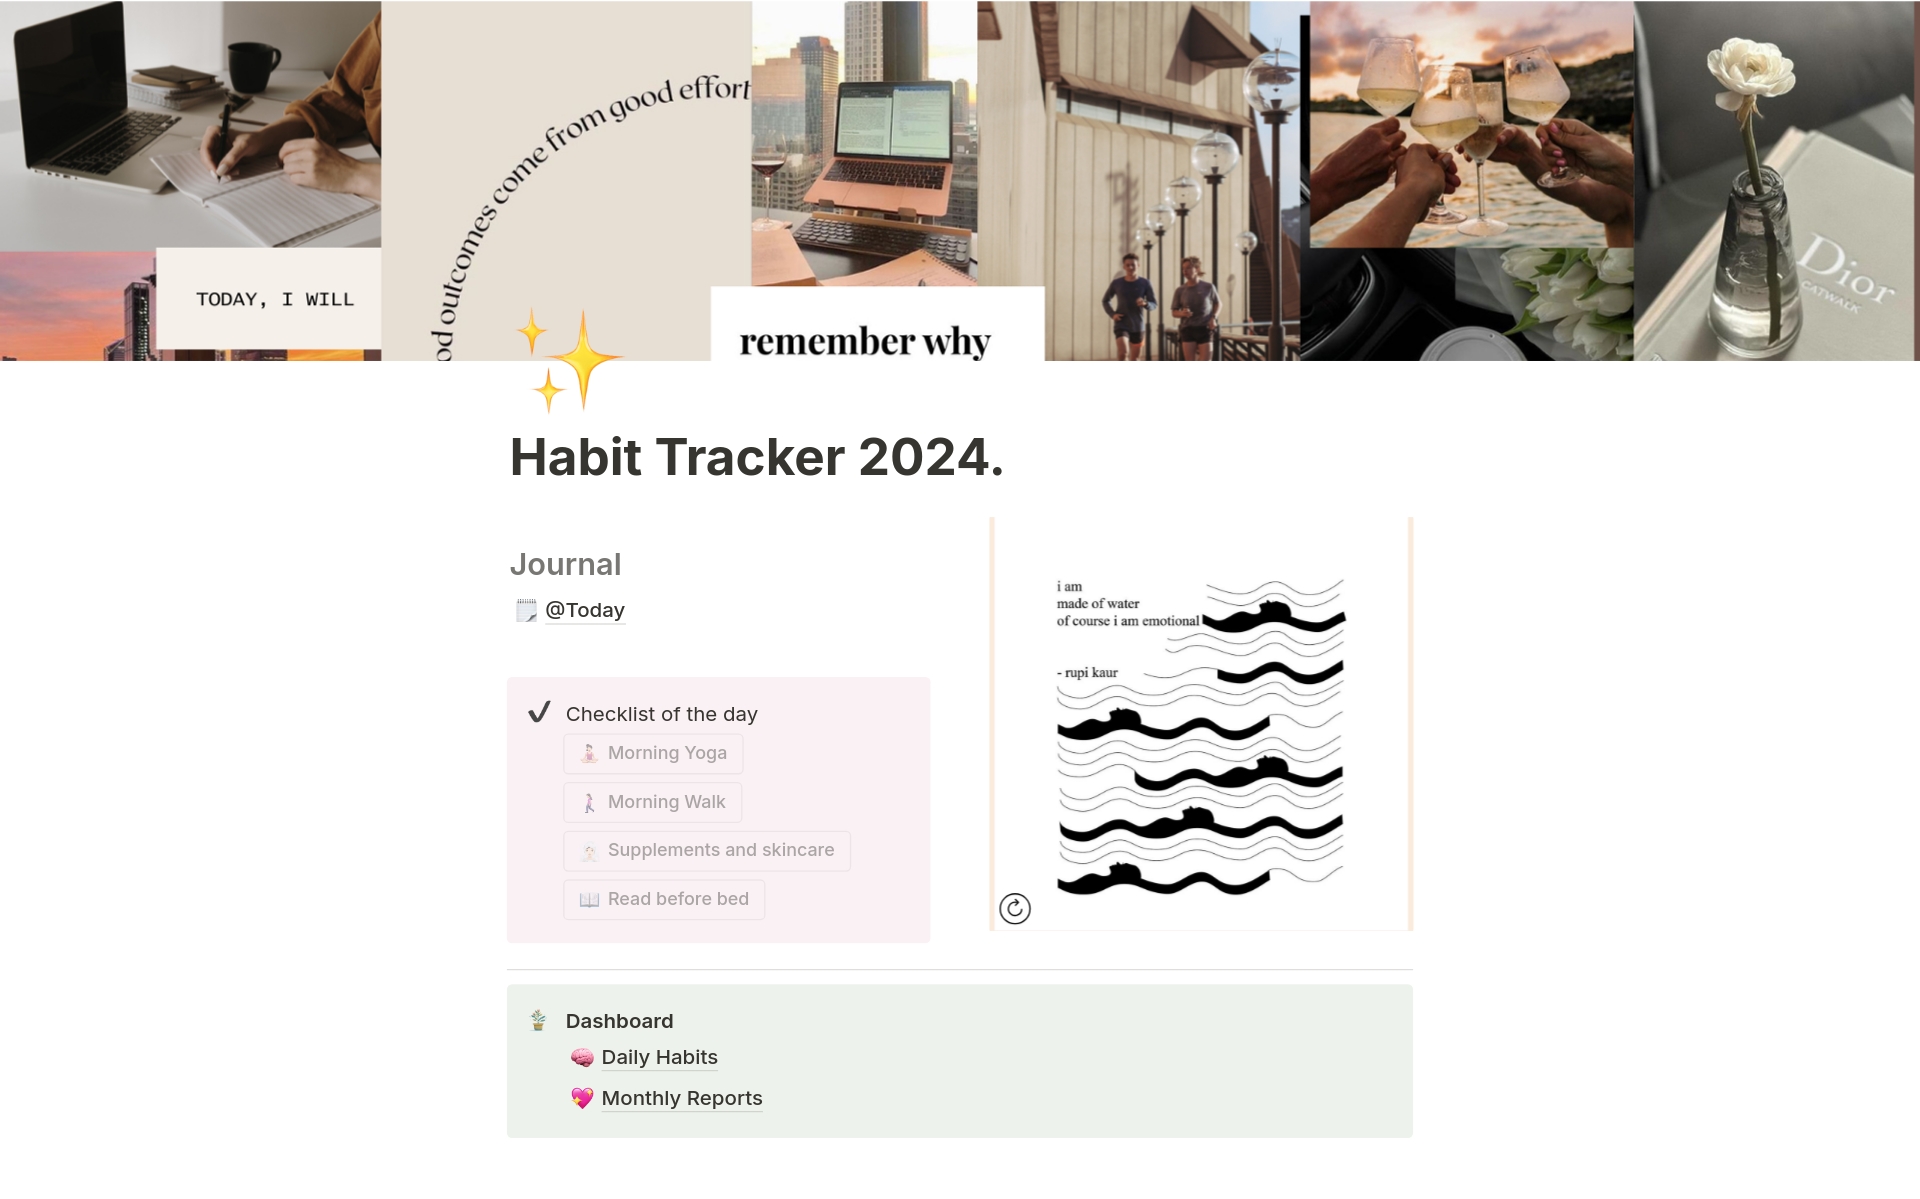 Vista previa de una plantilla para Habit Tracker 2024